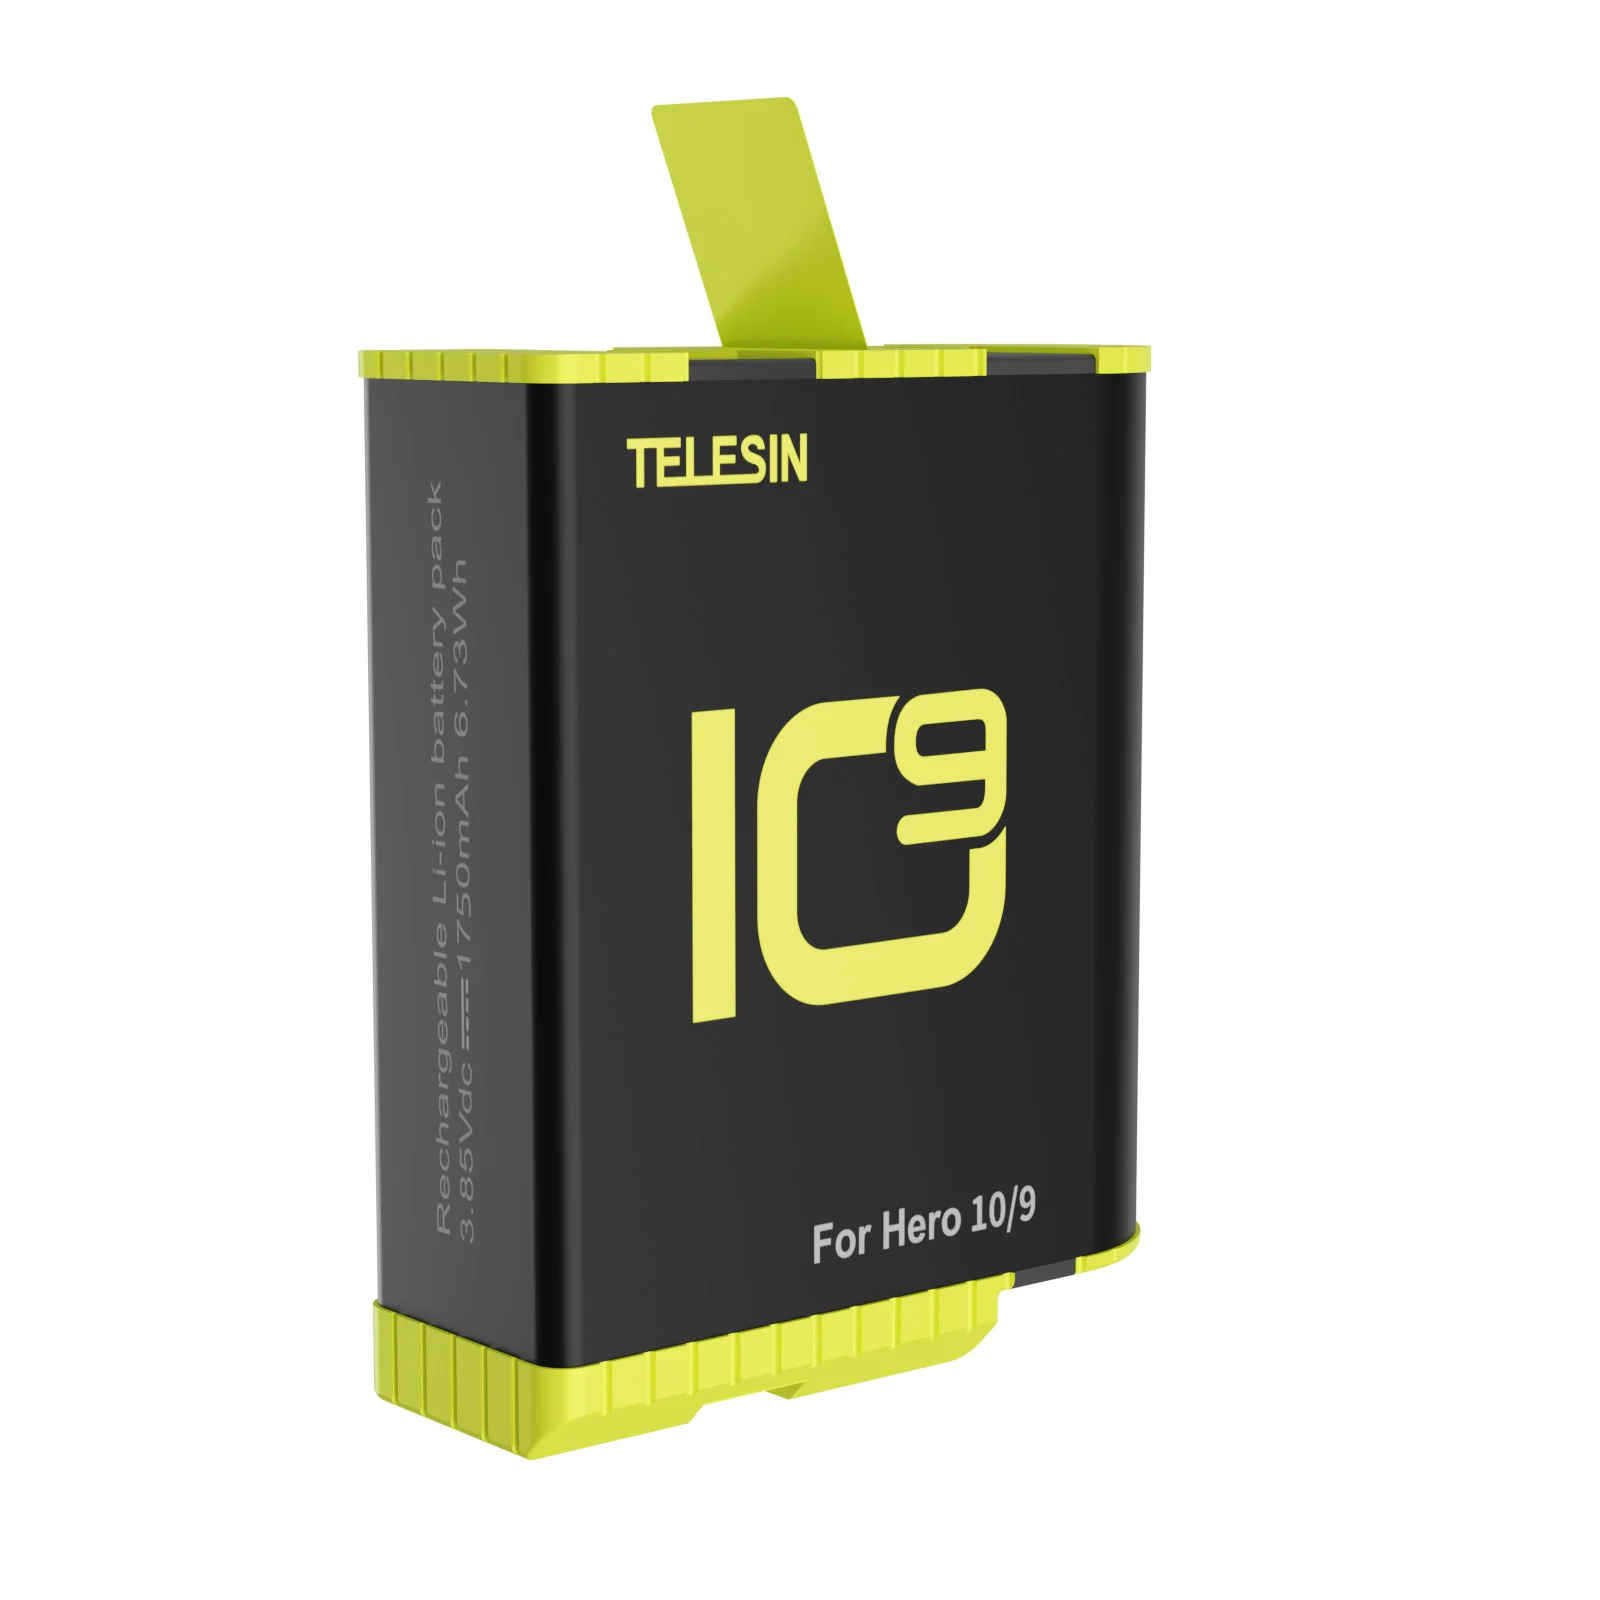 Аккумулятор TELESIN 1750 мА · ч для экшн-Камеры GoPro Hero 10 9 Black | Электроника